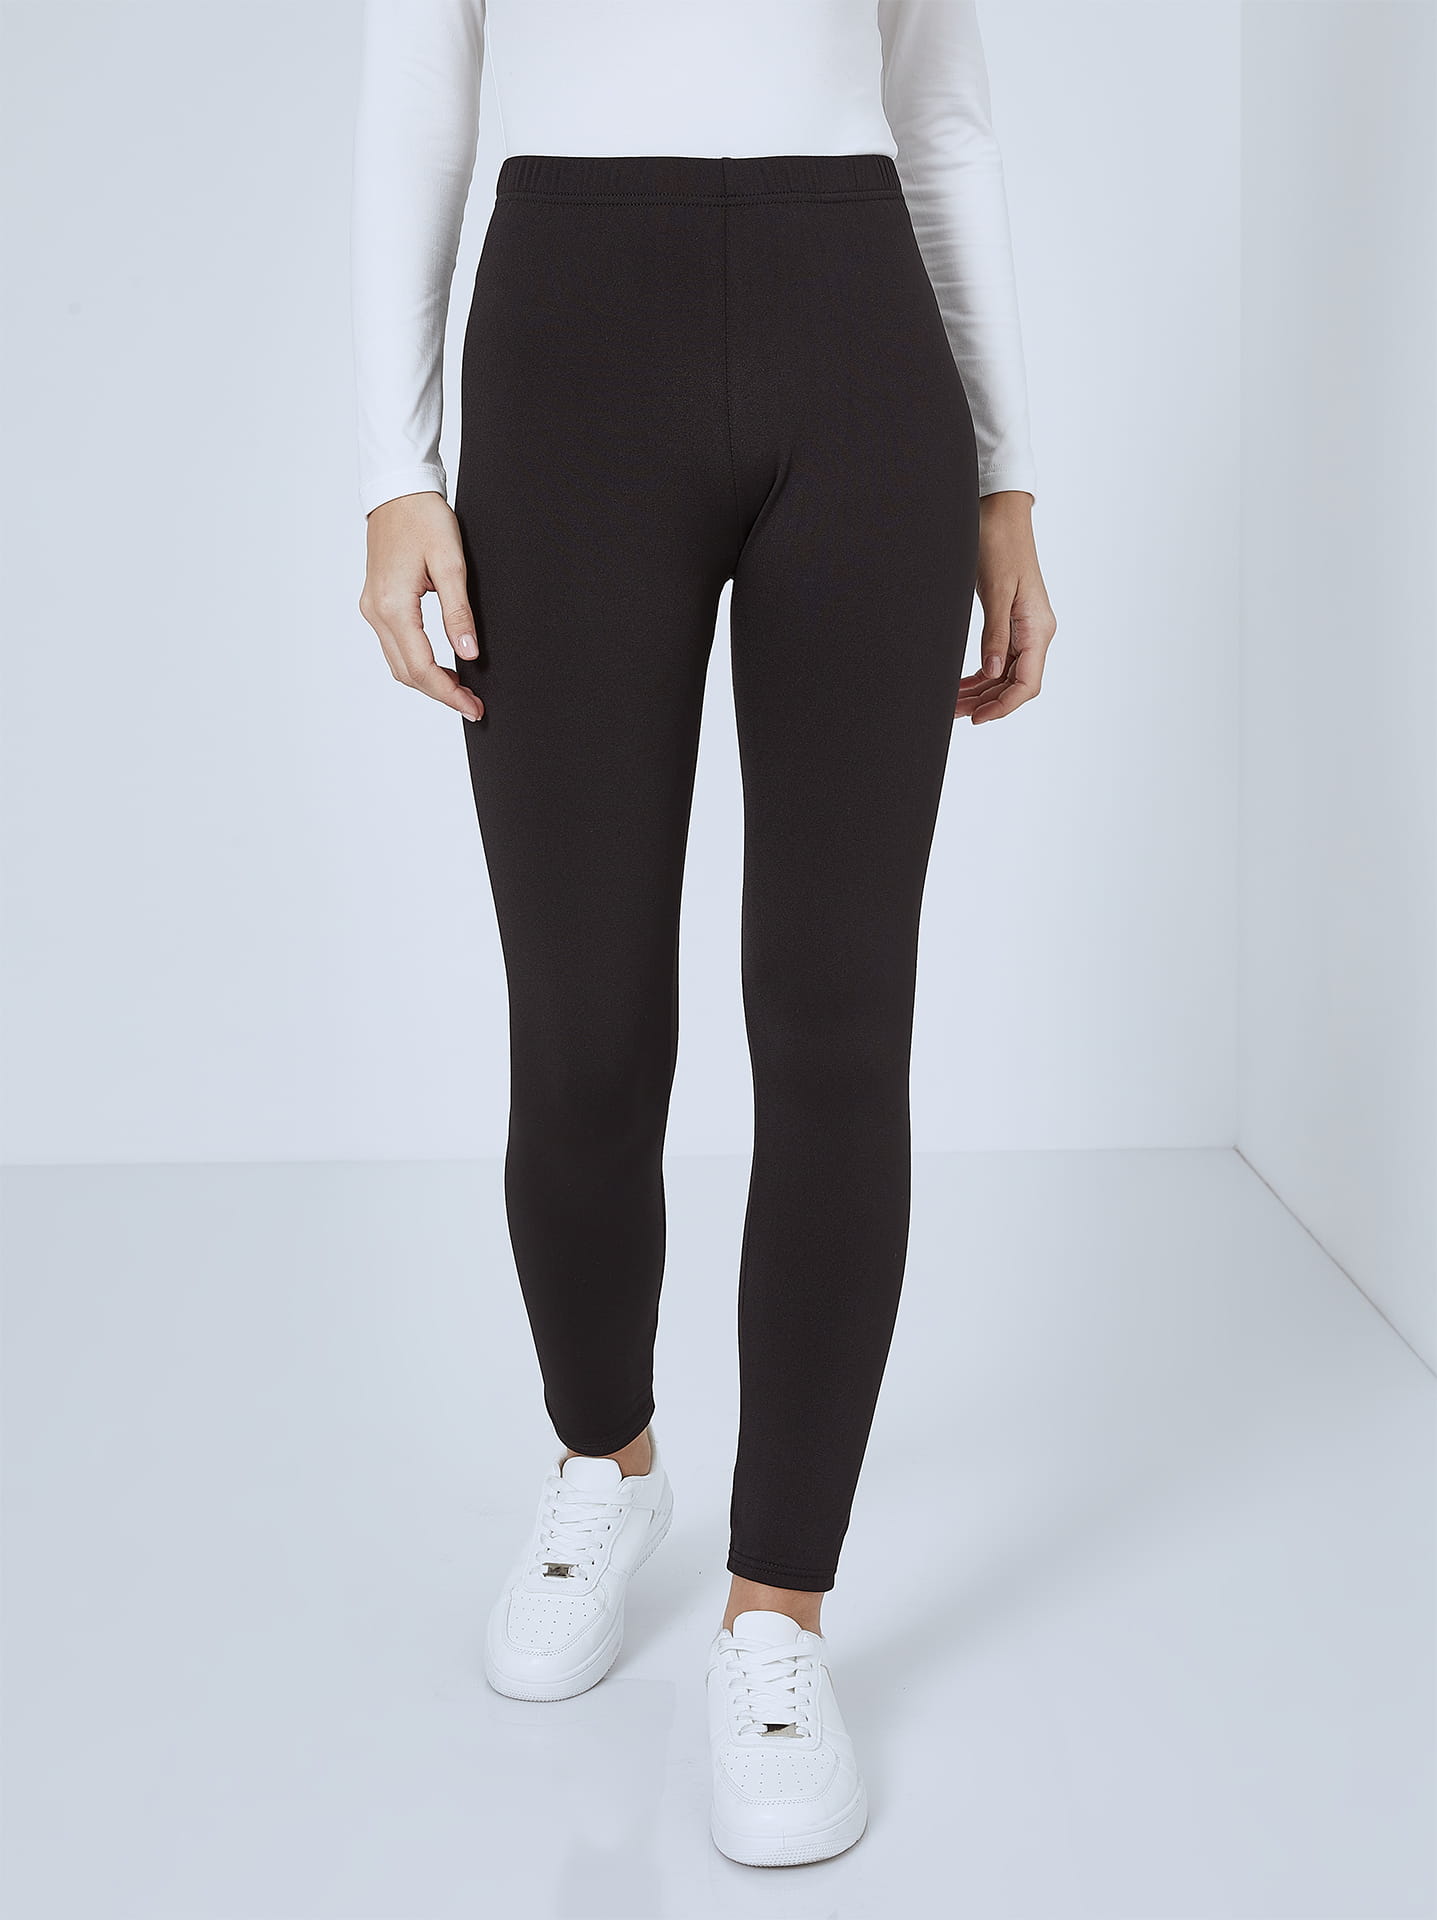 Monochrome thermal leggings in black, 6.99€